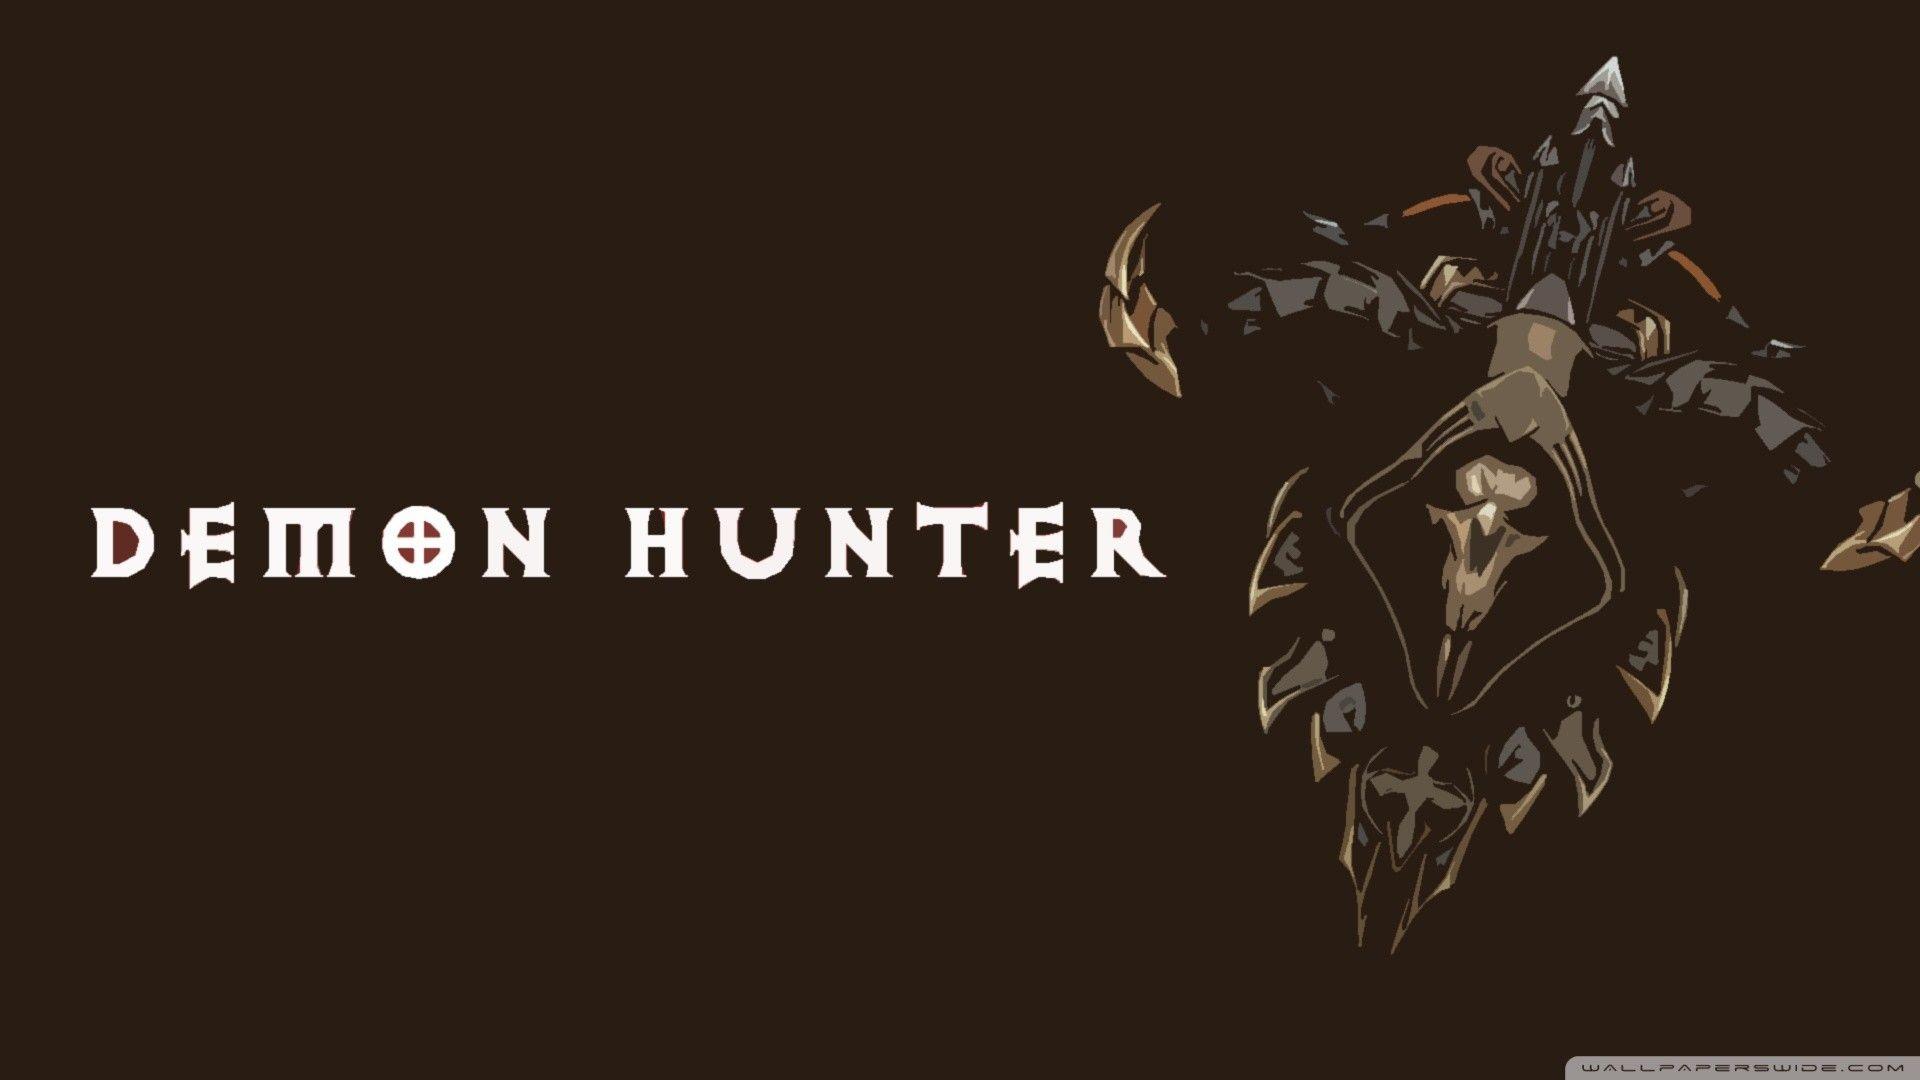 Ontwerp de nieuwe Demon Hunter poster - RockLife | Poster, Demon